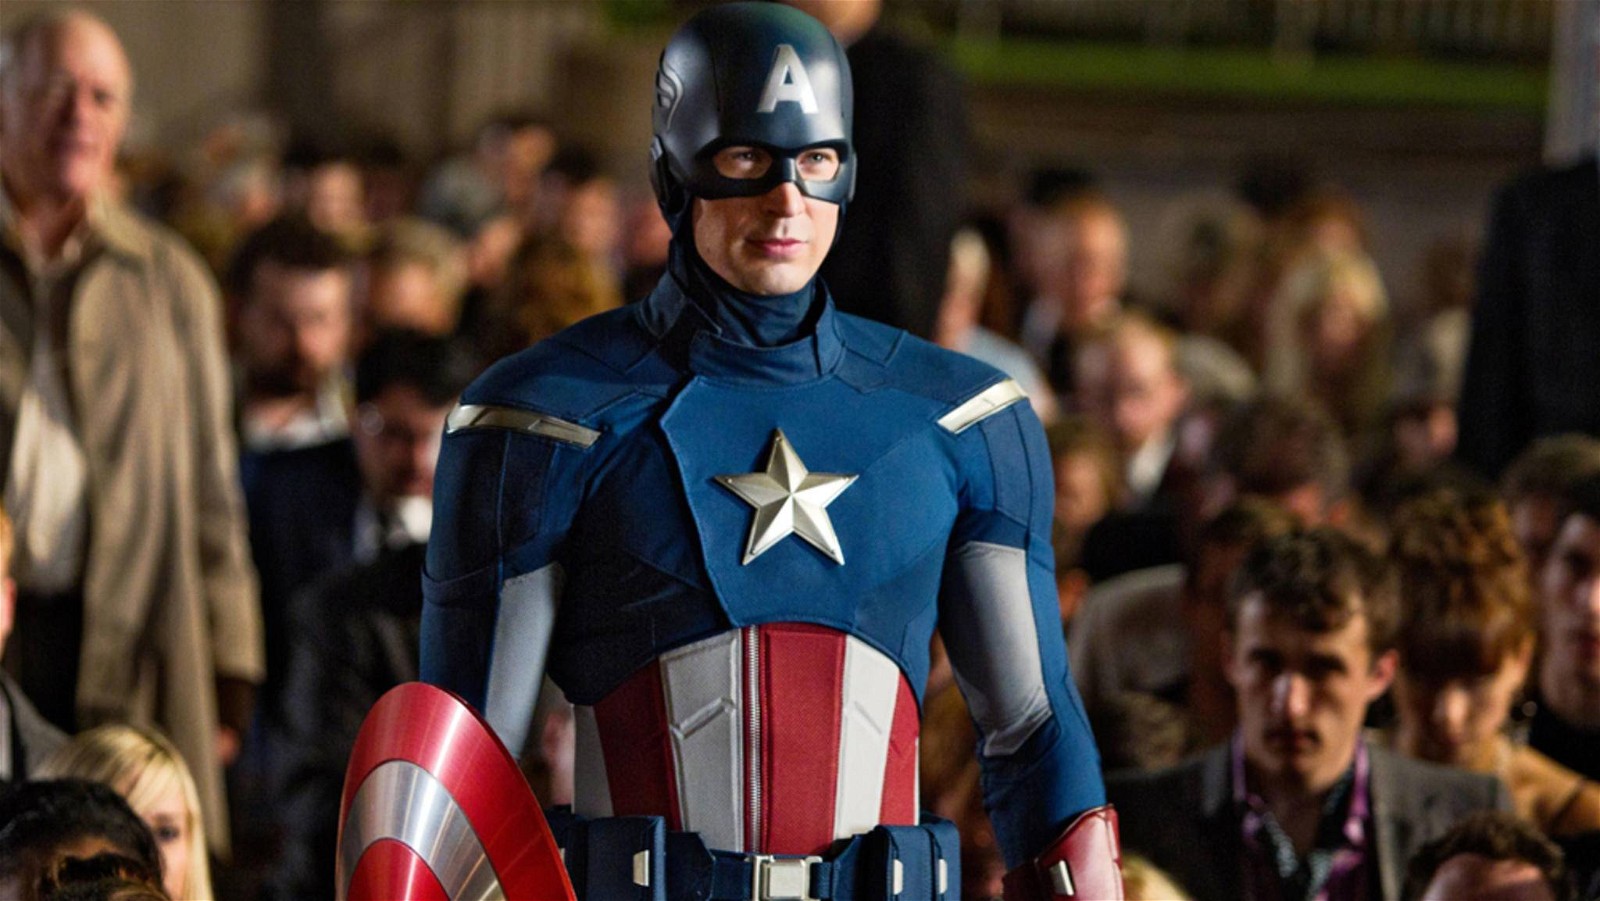 Captain America: The First Avenger (2011)